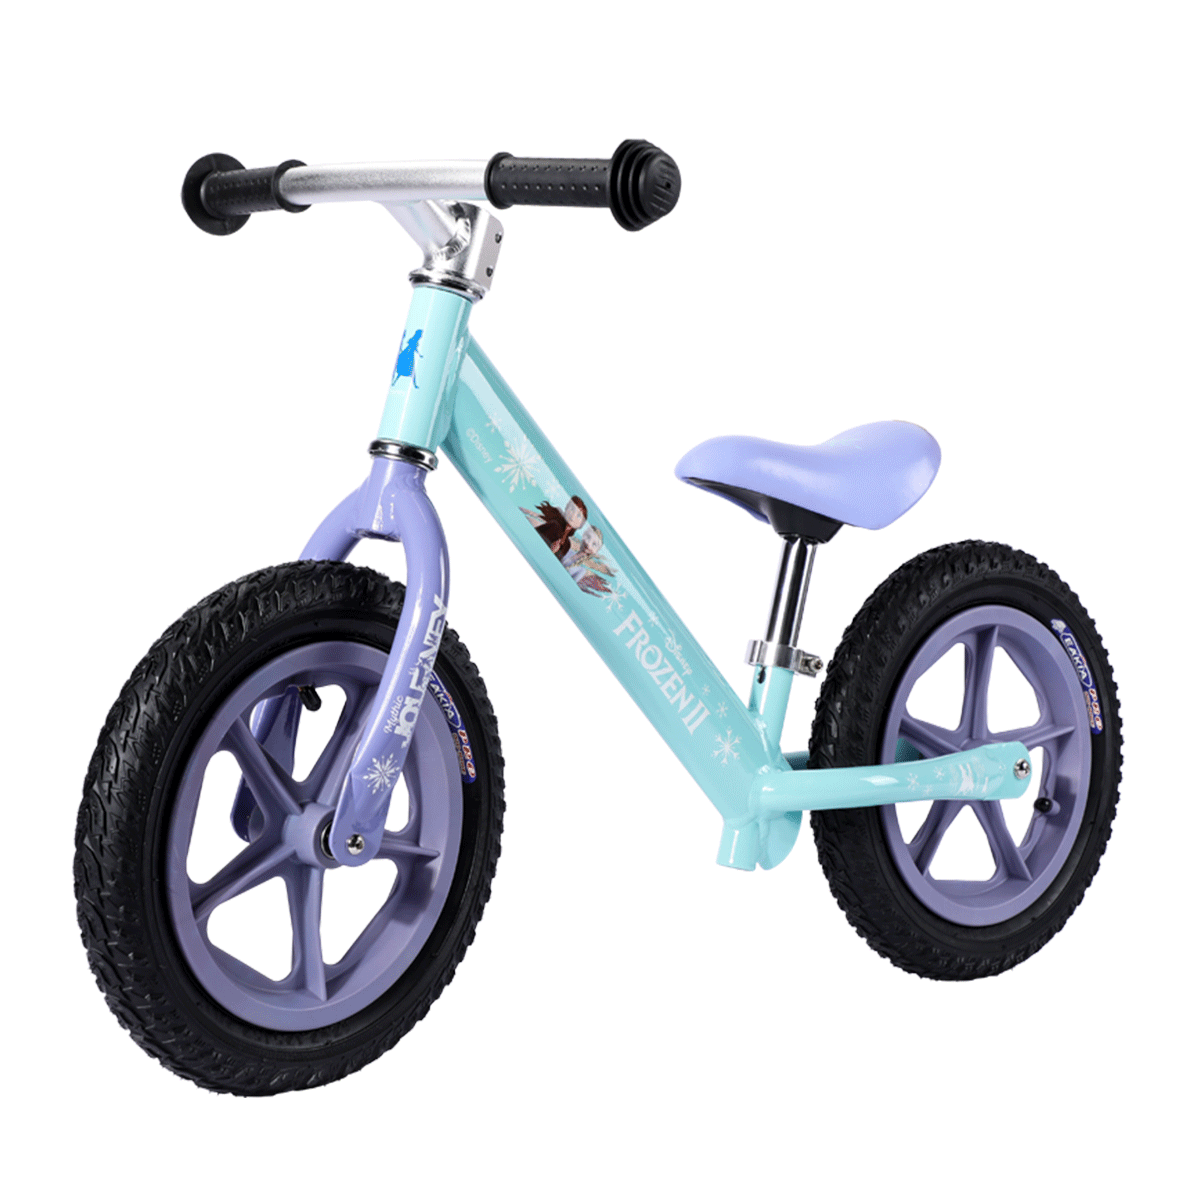 ディズニー フローズンとプリンセス バランス自転車 20234 2-5 歳の子供のホット販売します。